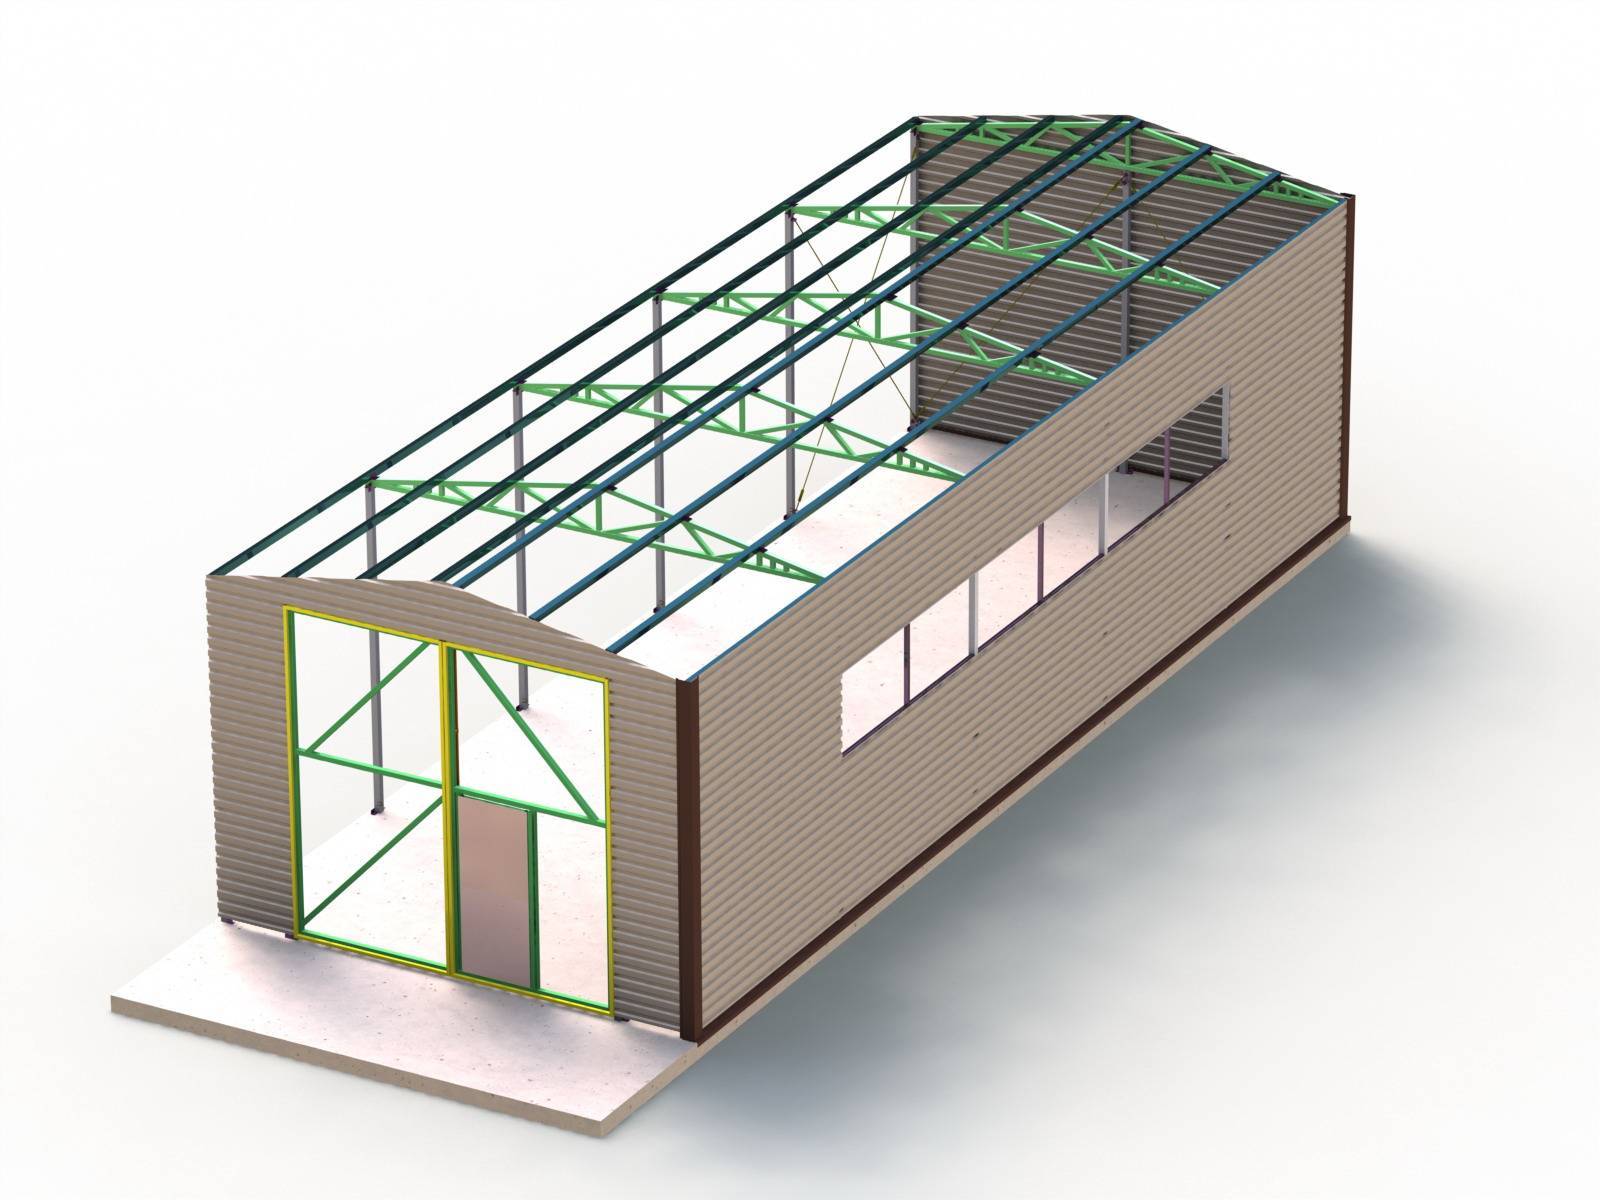 Быстровозводимый гараж из лстк - инновационное решение в строительстве